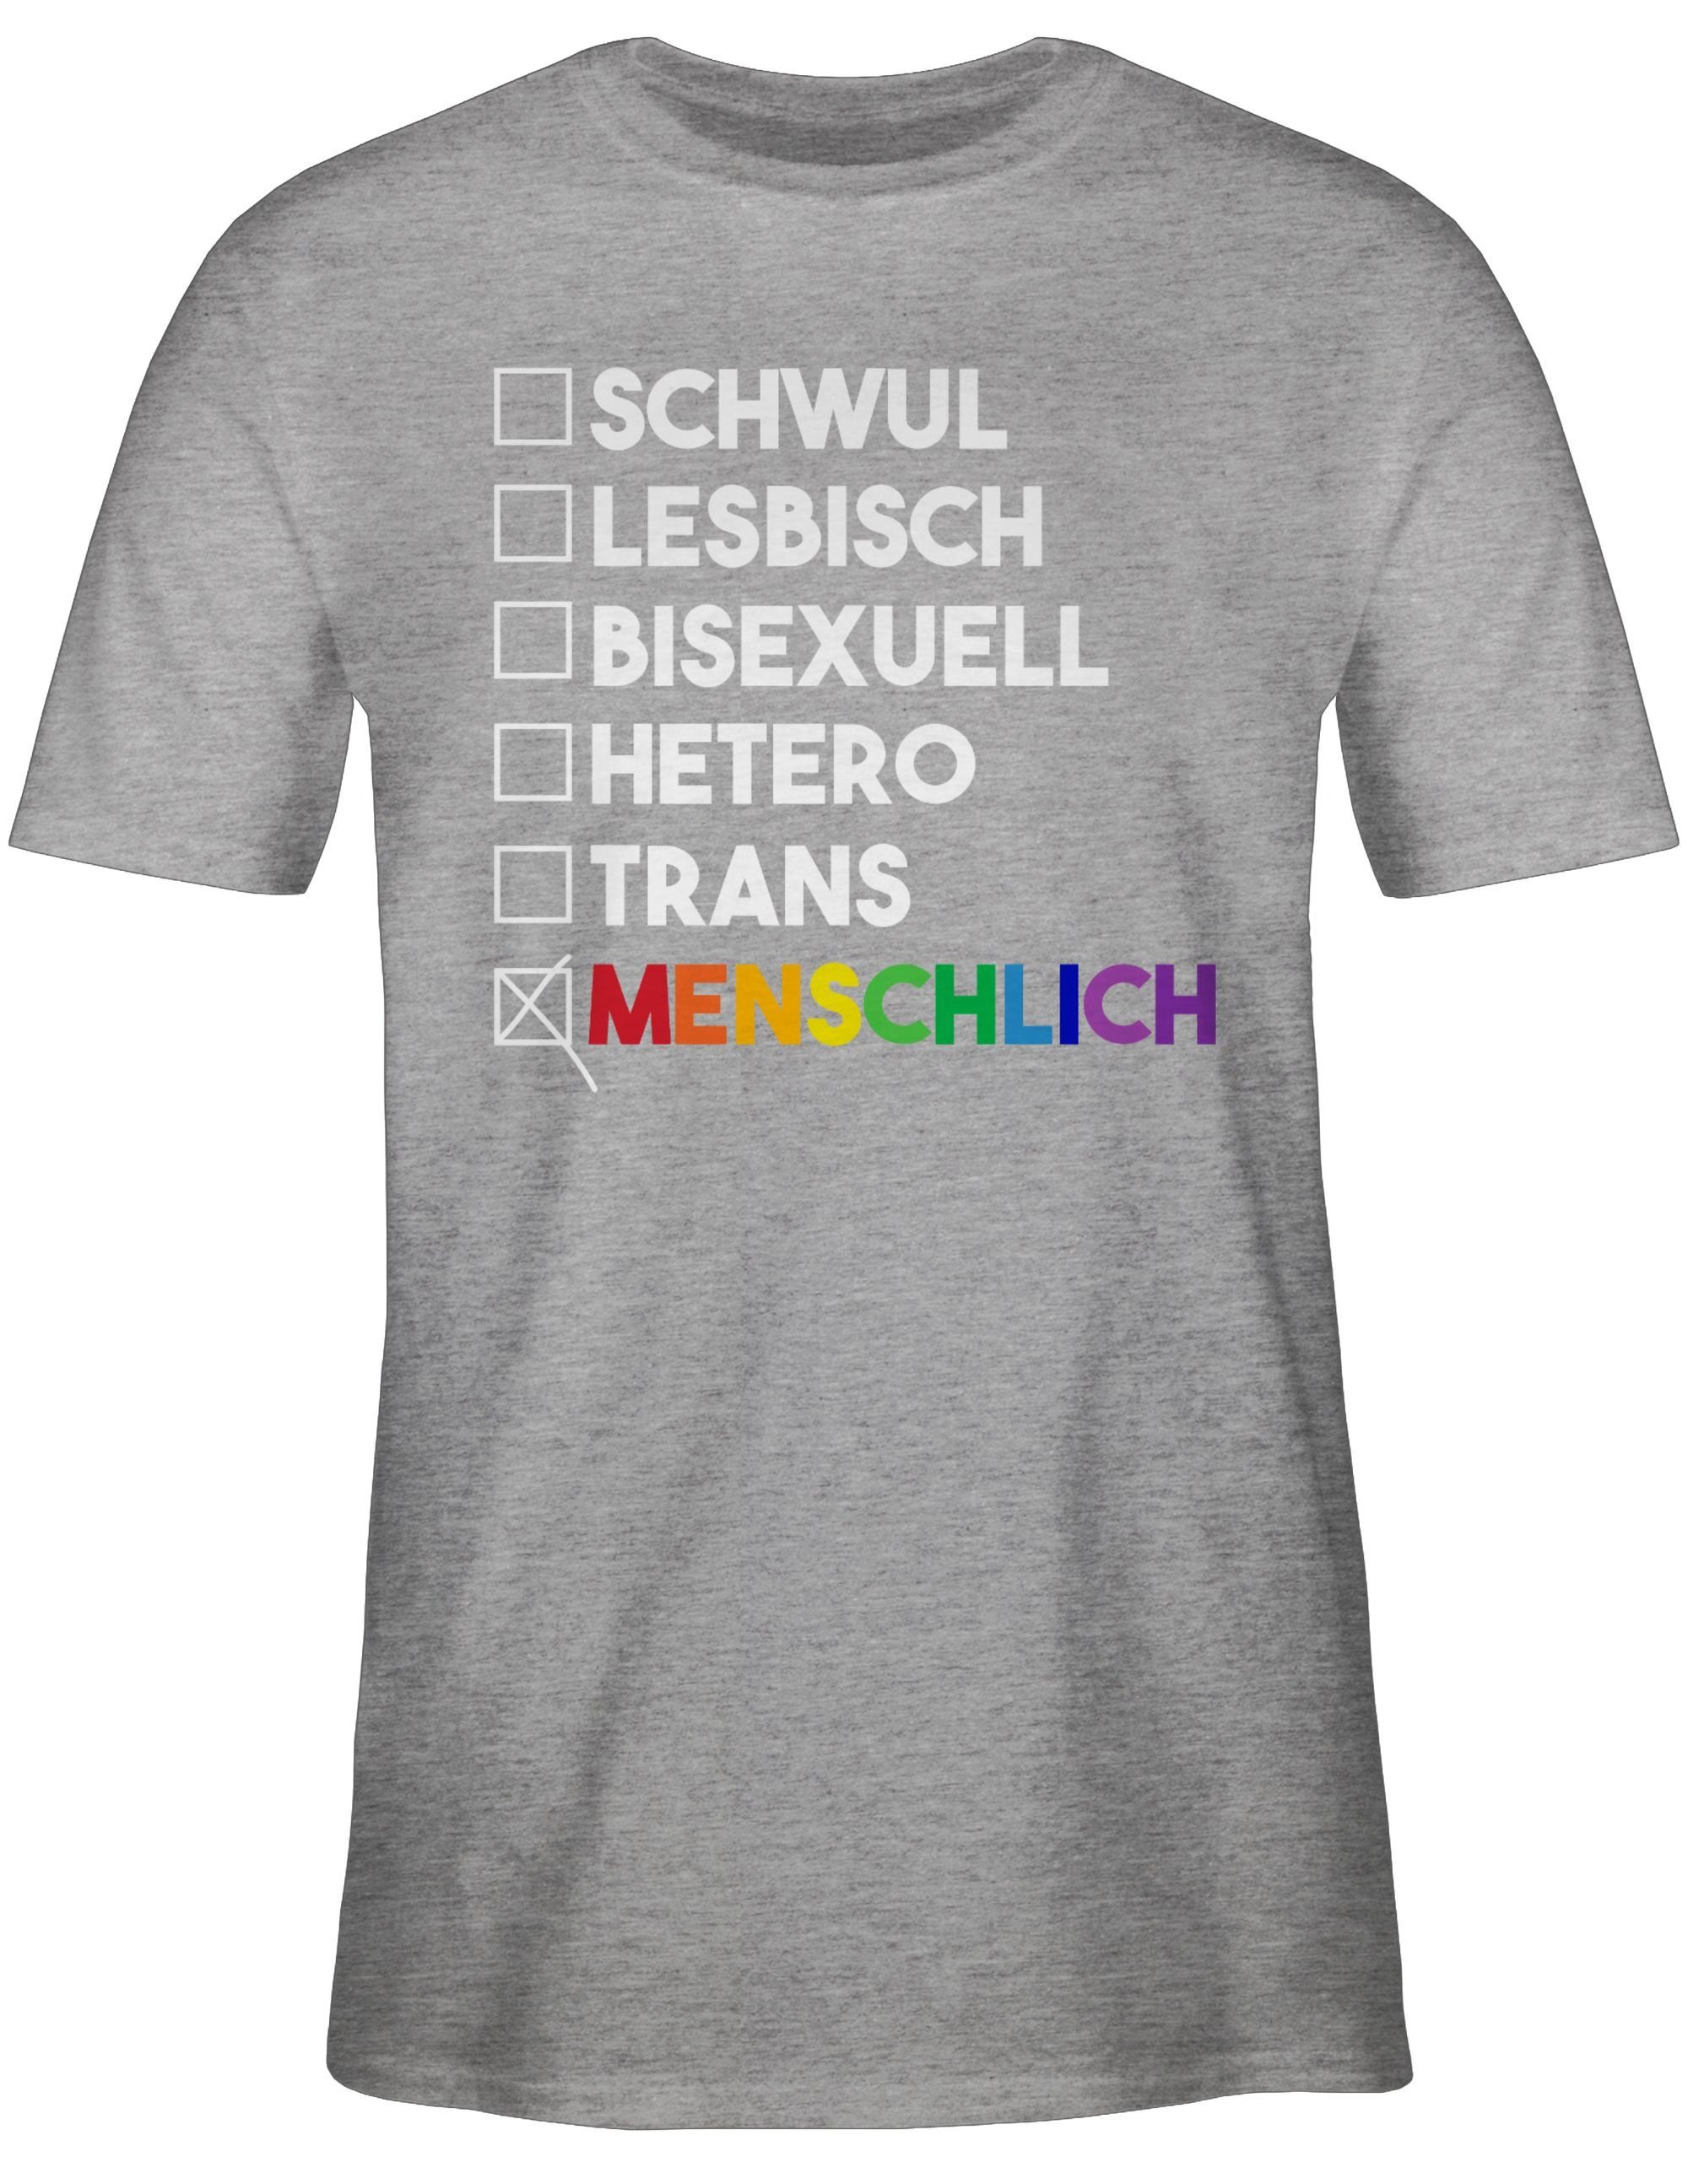 Regenbogen meliert - Deine Pride 02 - T-Shirt - Wahl LGBT Shirtracer Kleidung Grau Menschlich weiß -